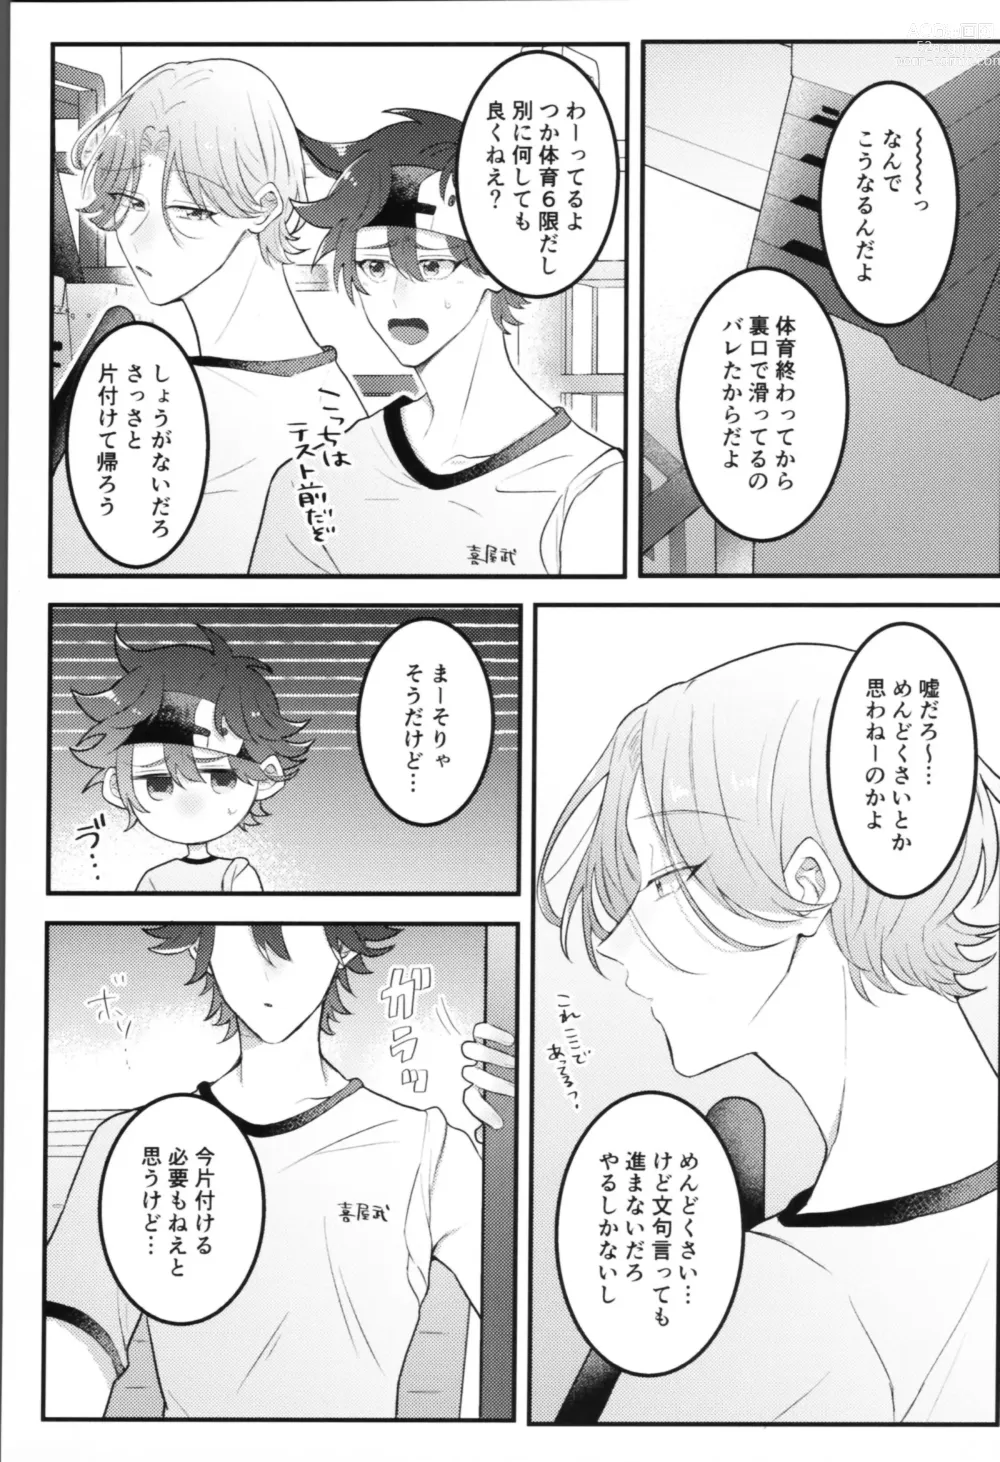 Page 4 of doujinshi Sense-saborimasu